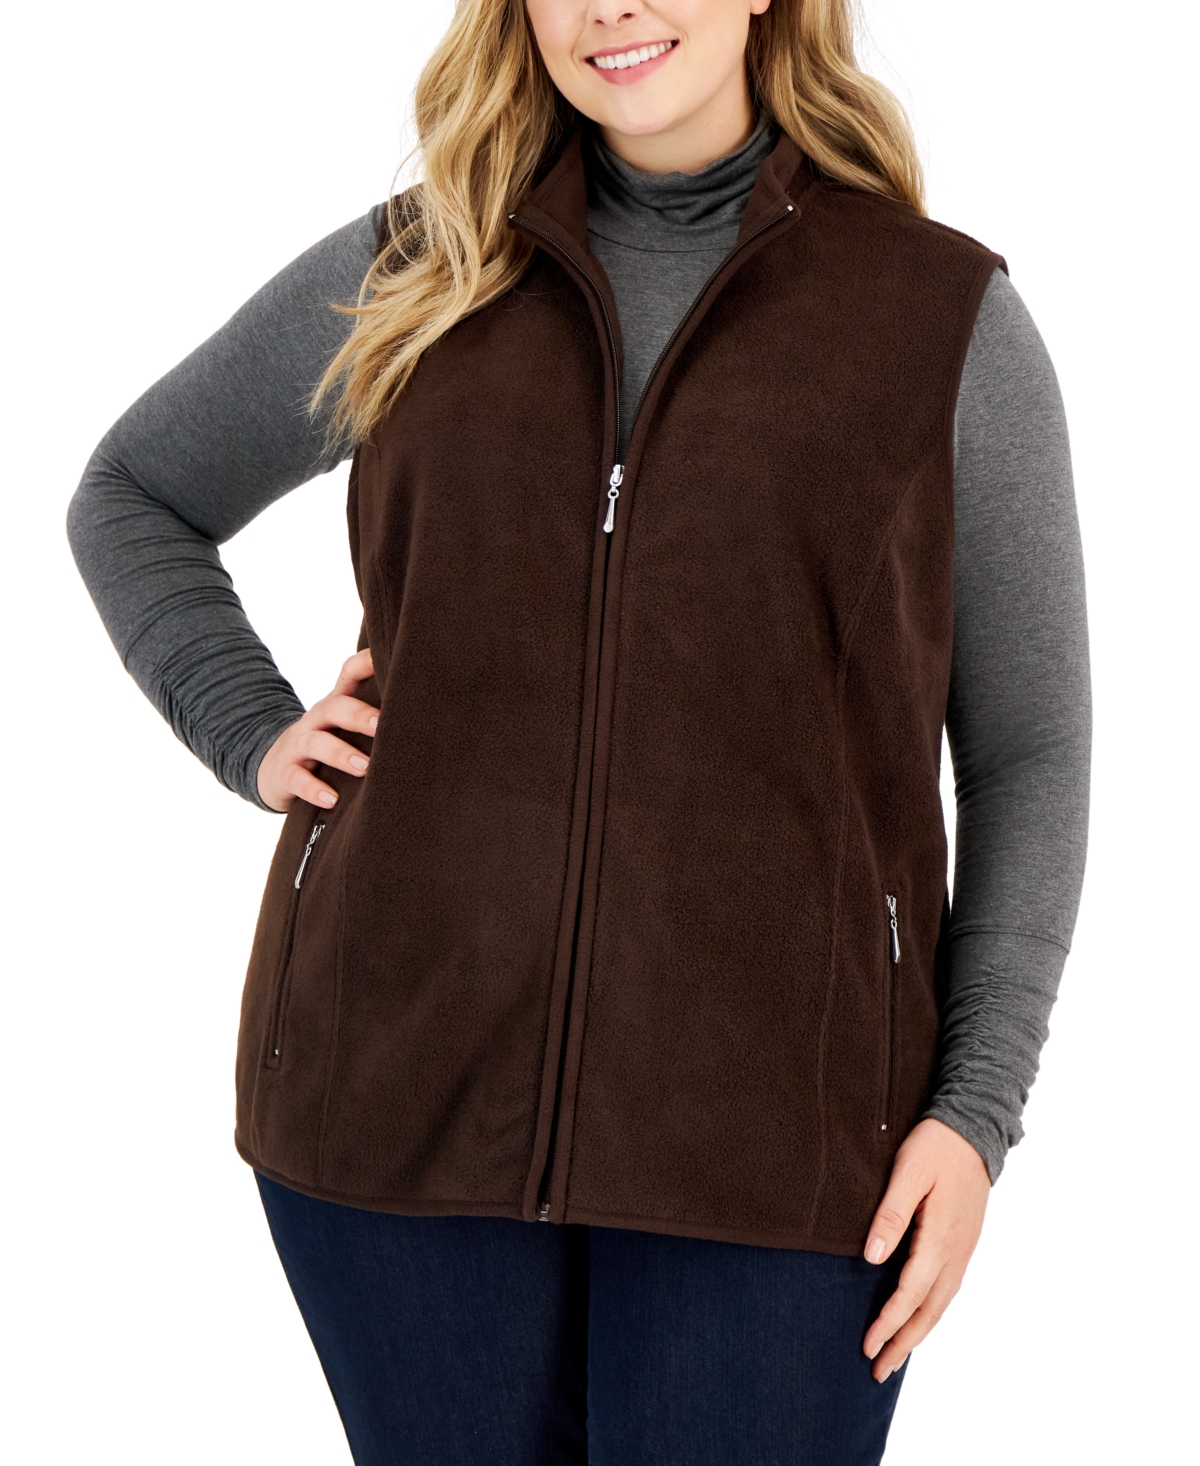 Karen Scott Petite Princess-Seam Zeroproof Zip-Front Vest, Created for  Macy's - Macy's